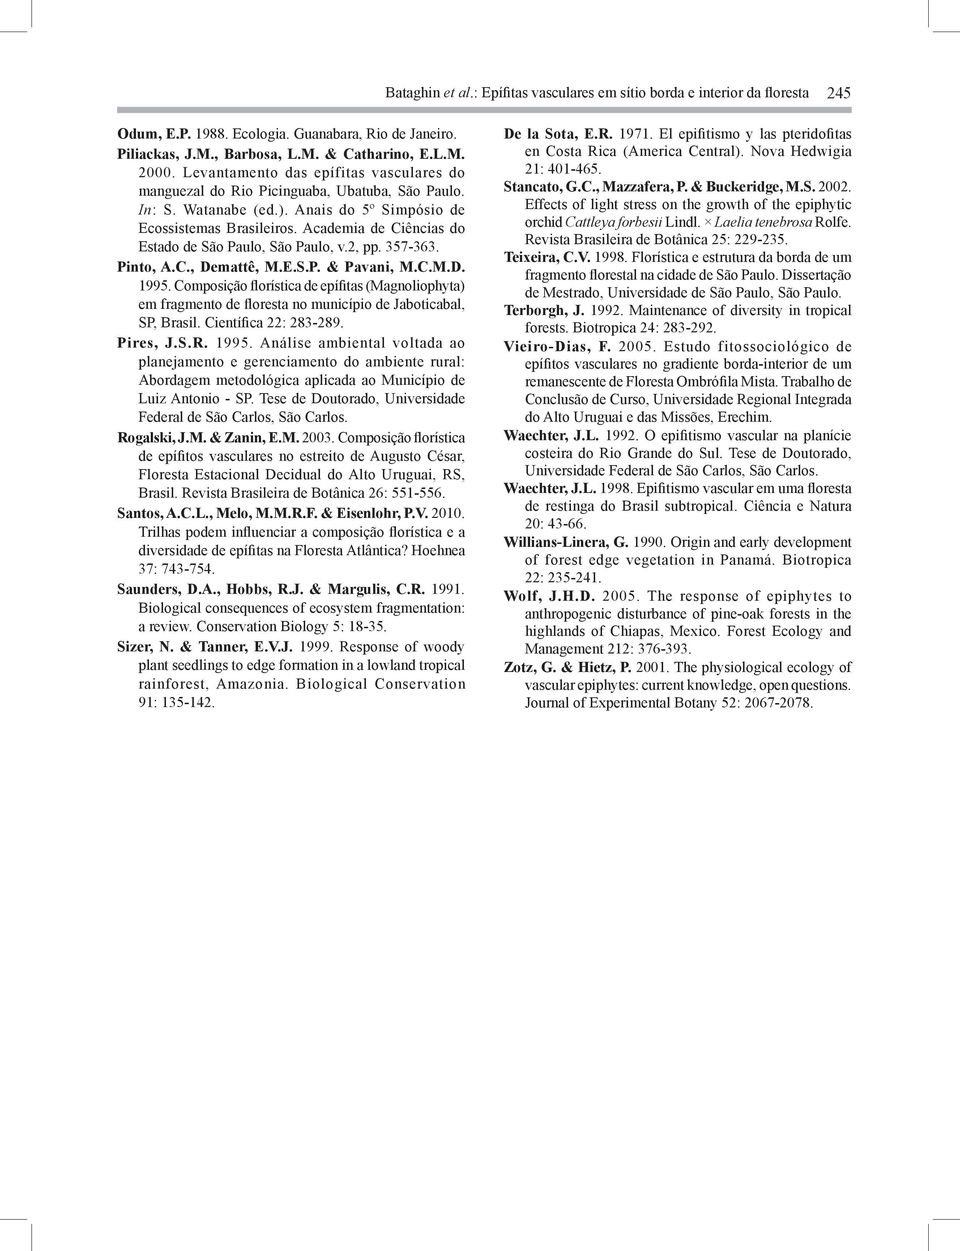 Academia de Ciências do Estado de São Paulo, São Paulo, v.2, pp. 357-363. Pinto, A.C., Demattê, M.E.S.P. & Pavani, M.C.M.D. 1995.